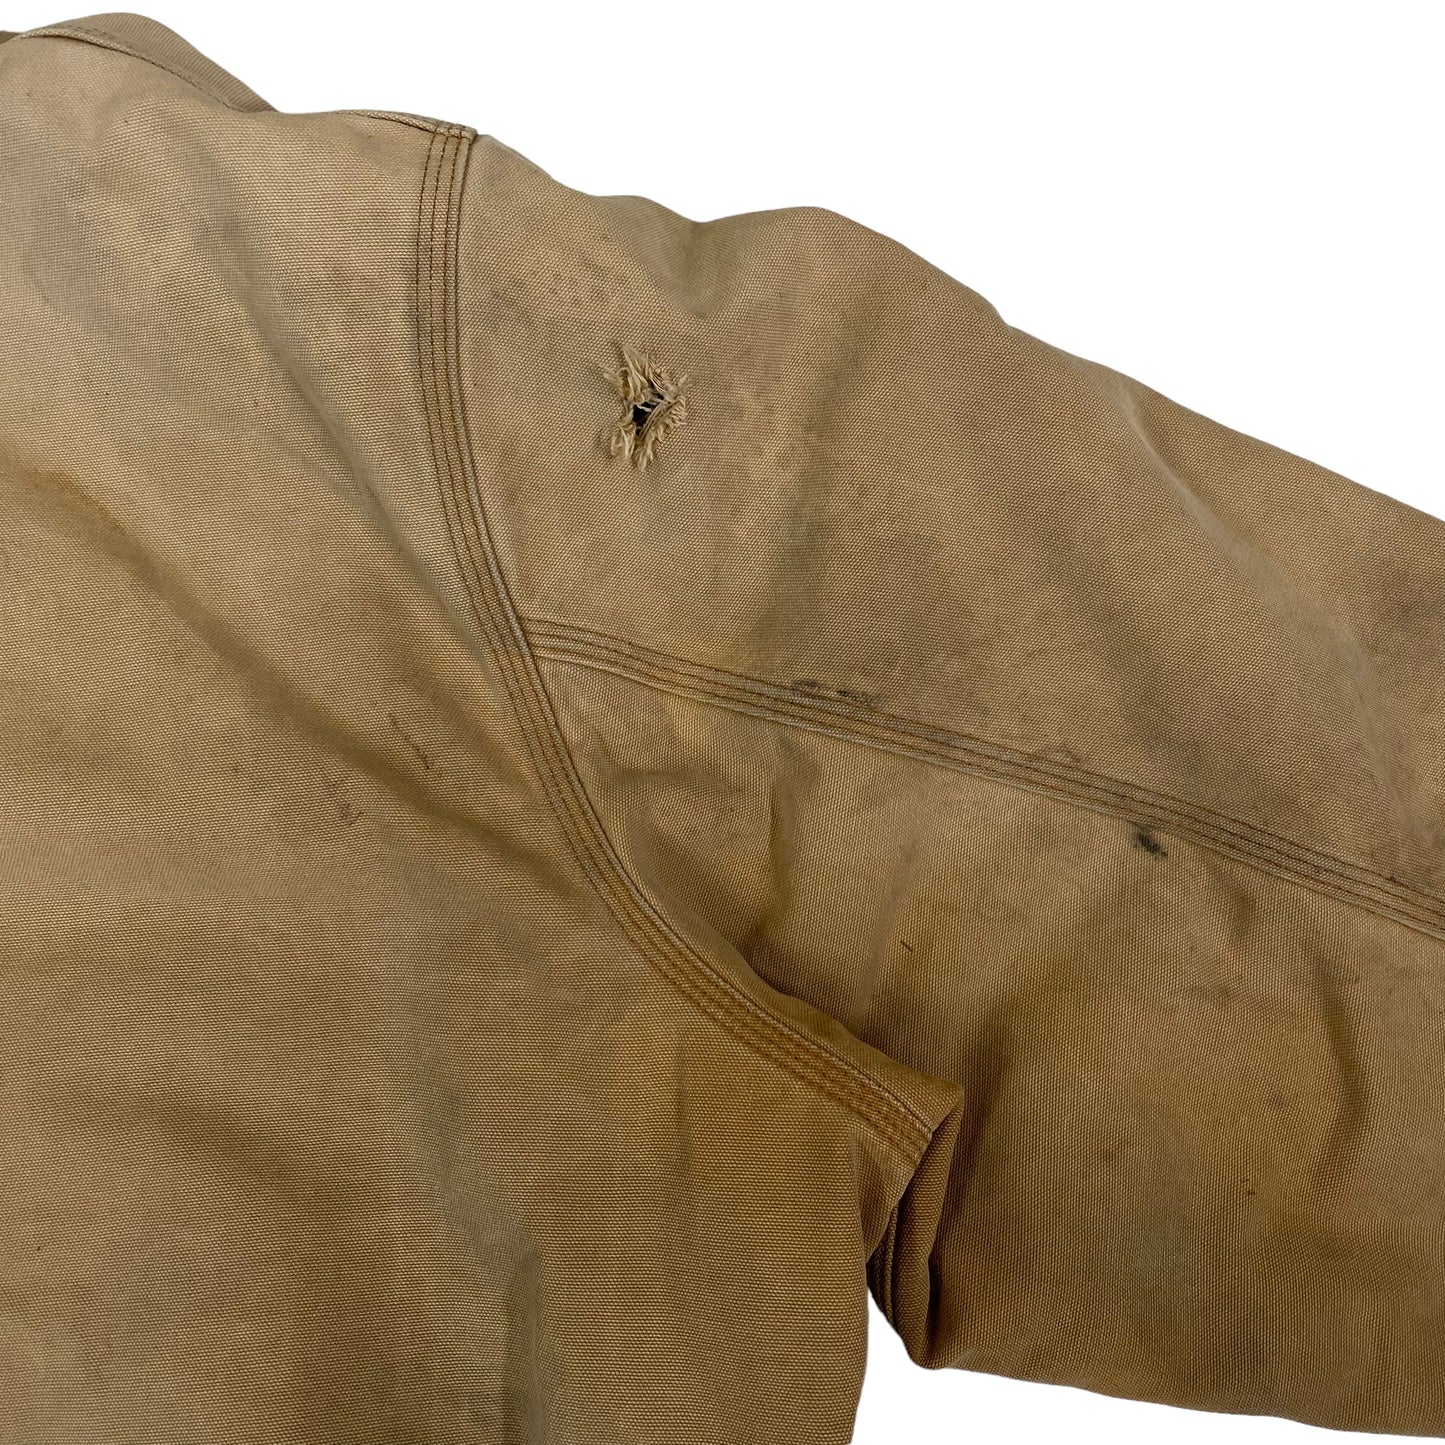 Carhartt Hooded Jacket Tan Sz XL (A2459)